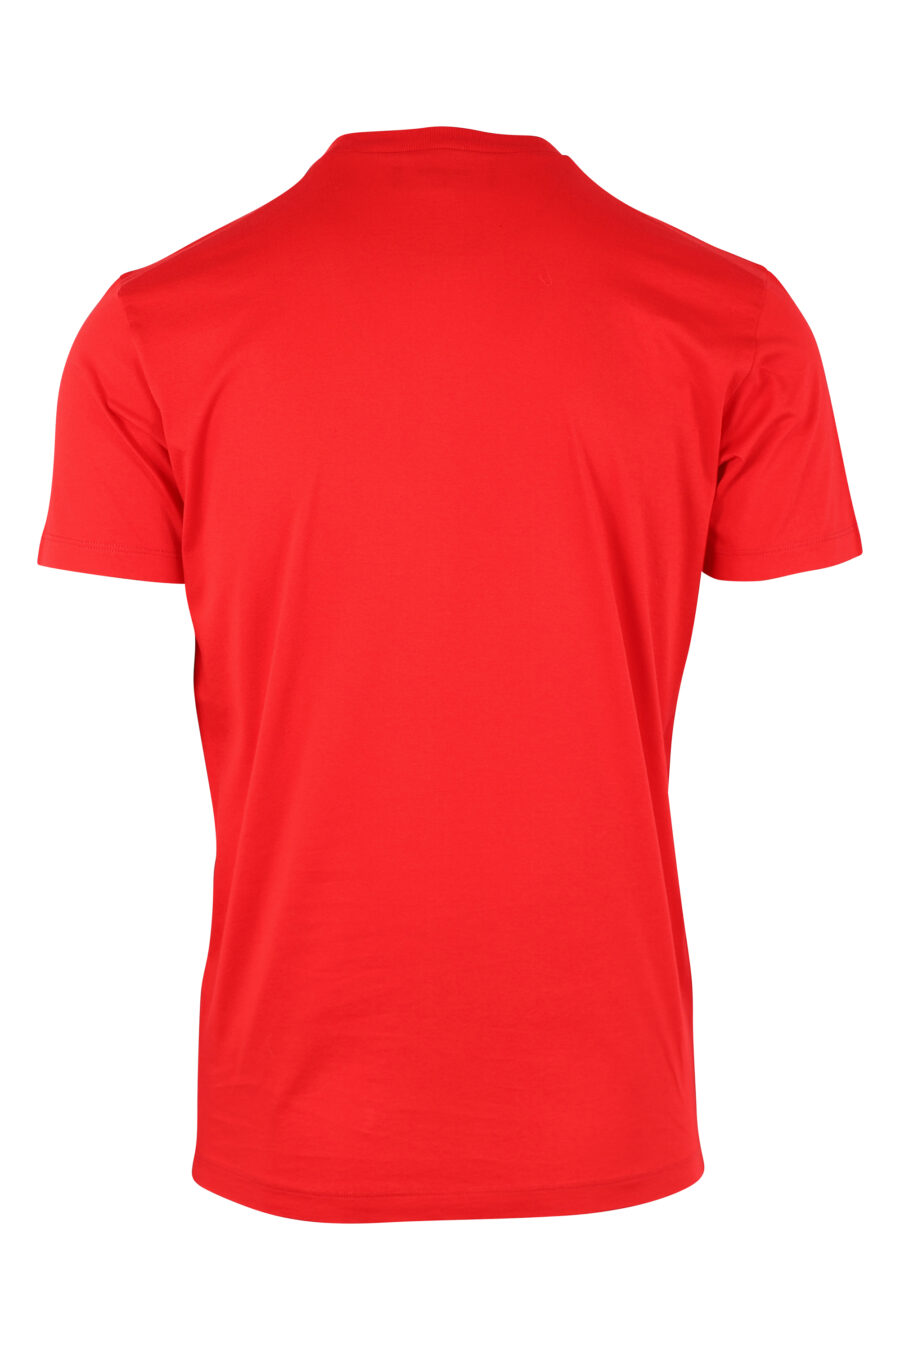 T-shirt rouge avec maxilogo "ceresio 9" - IMG 9751